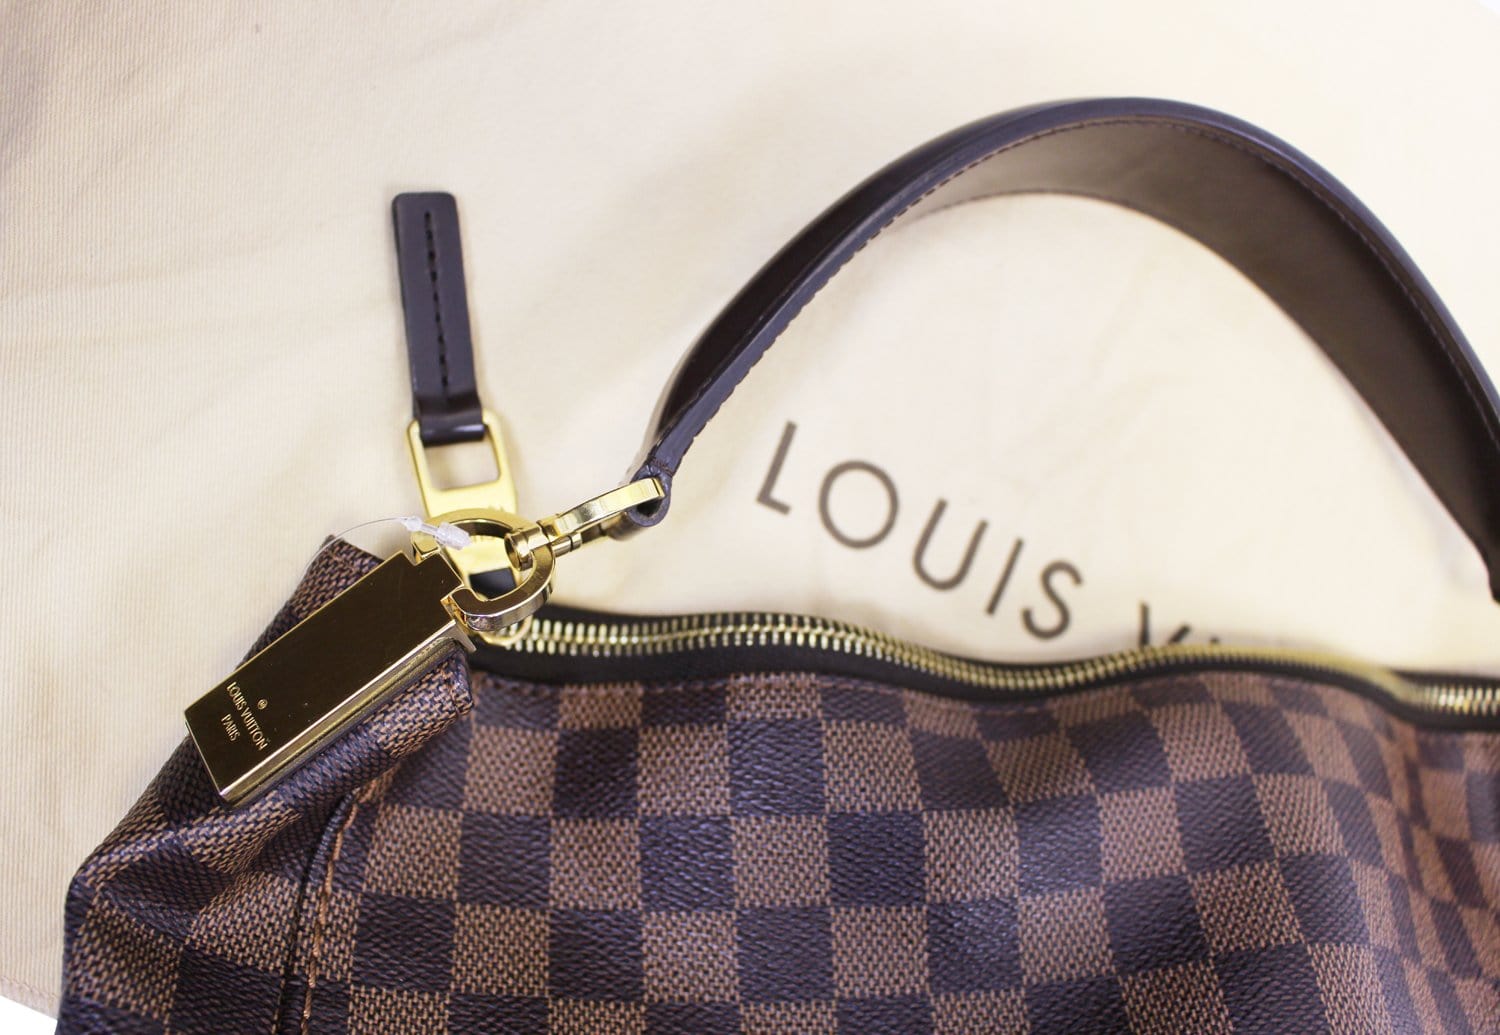 Louis Vuitton Portobello – The Brand Collector